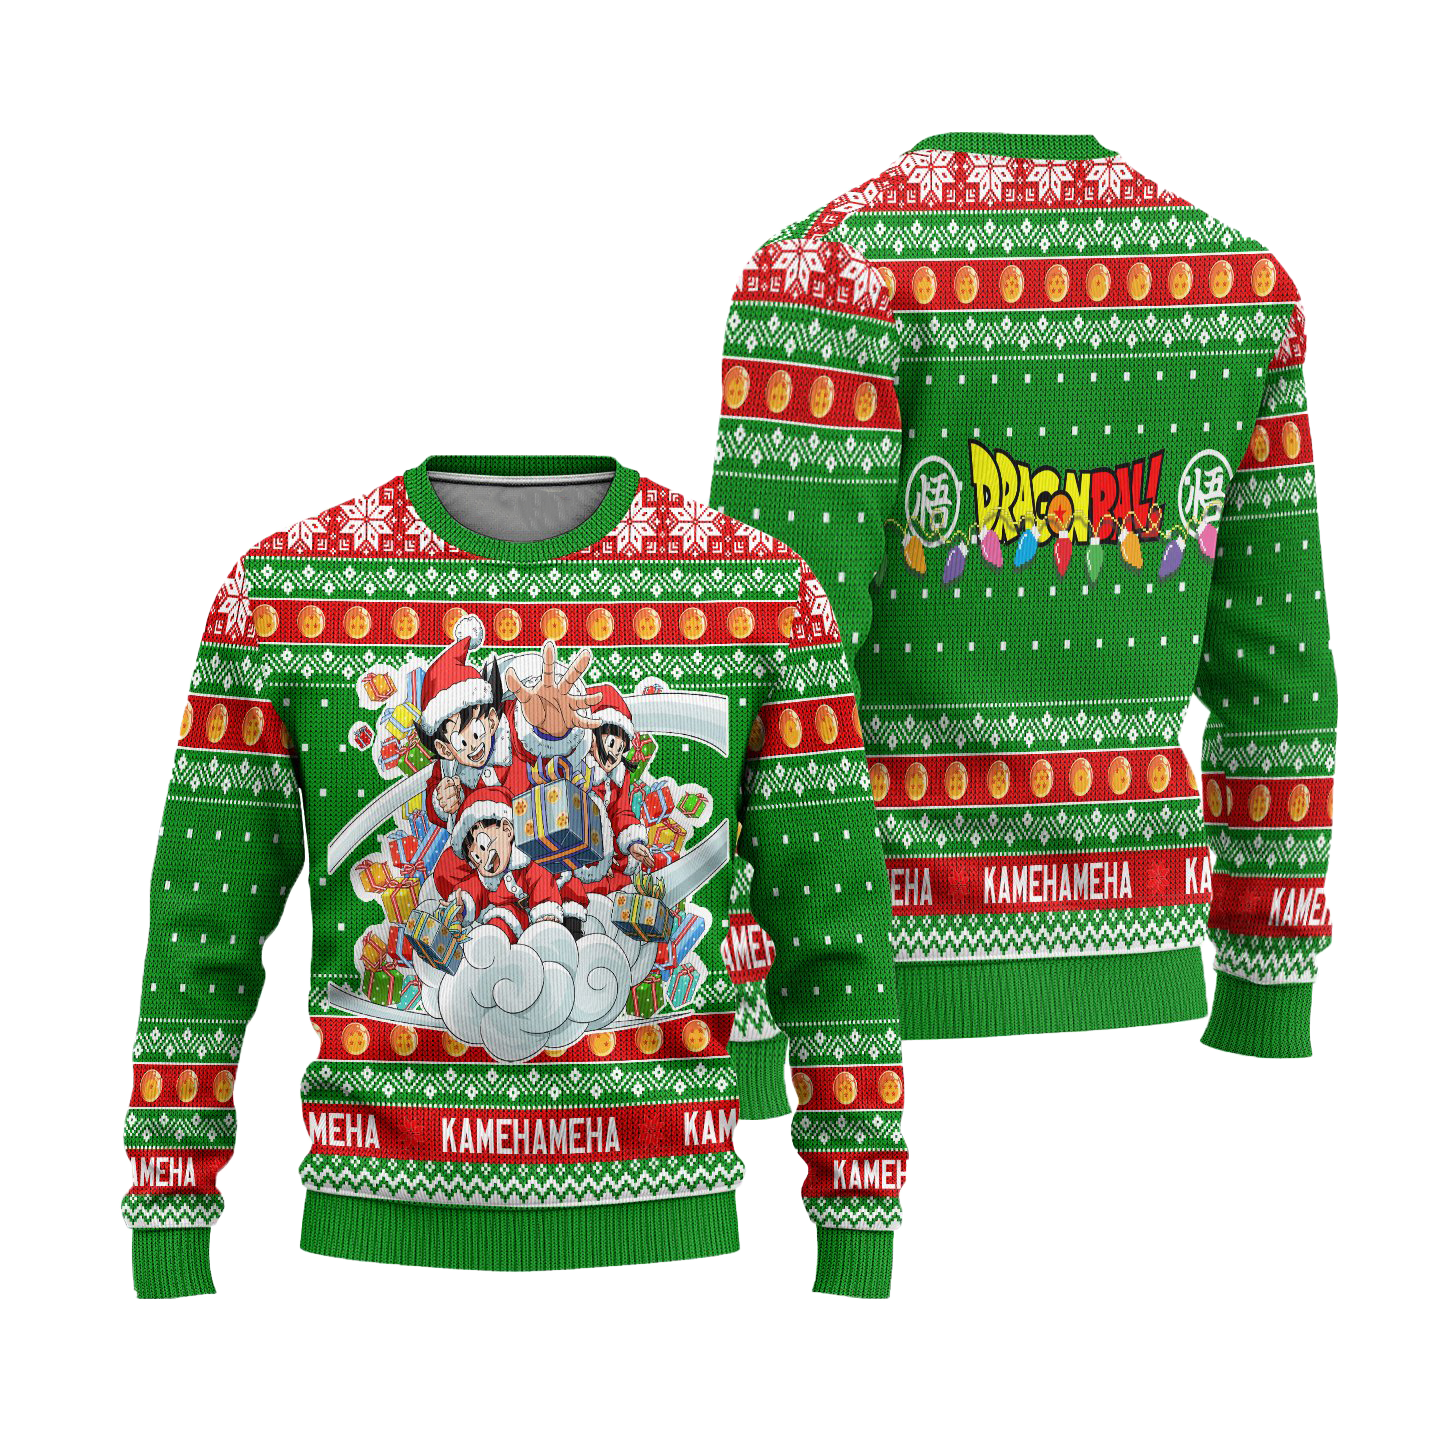 Goku x Gohan x Chi Chi Dragon Ball Anime Ugly Christmas Sweater Xmas Gift